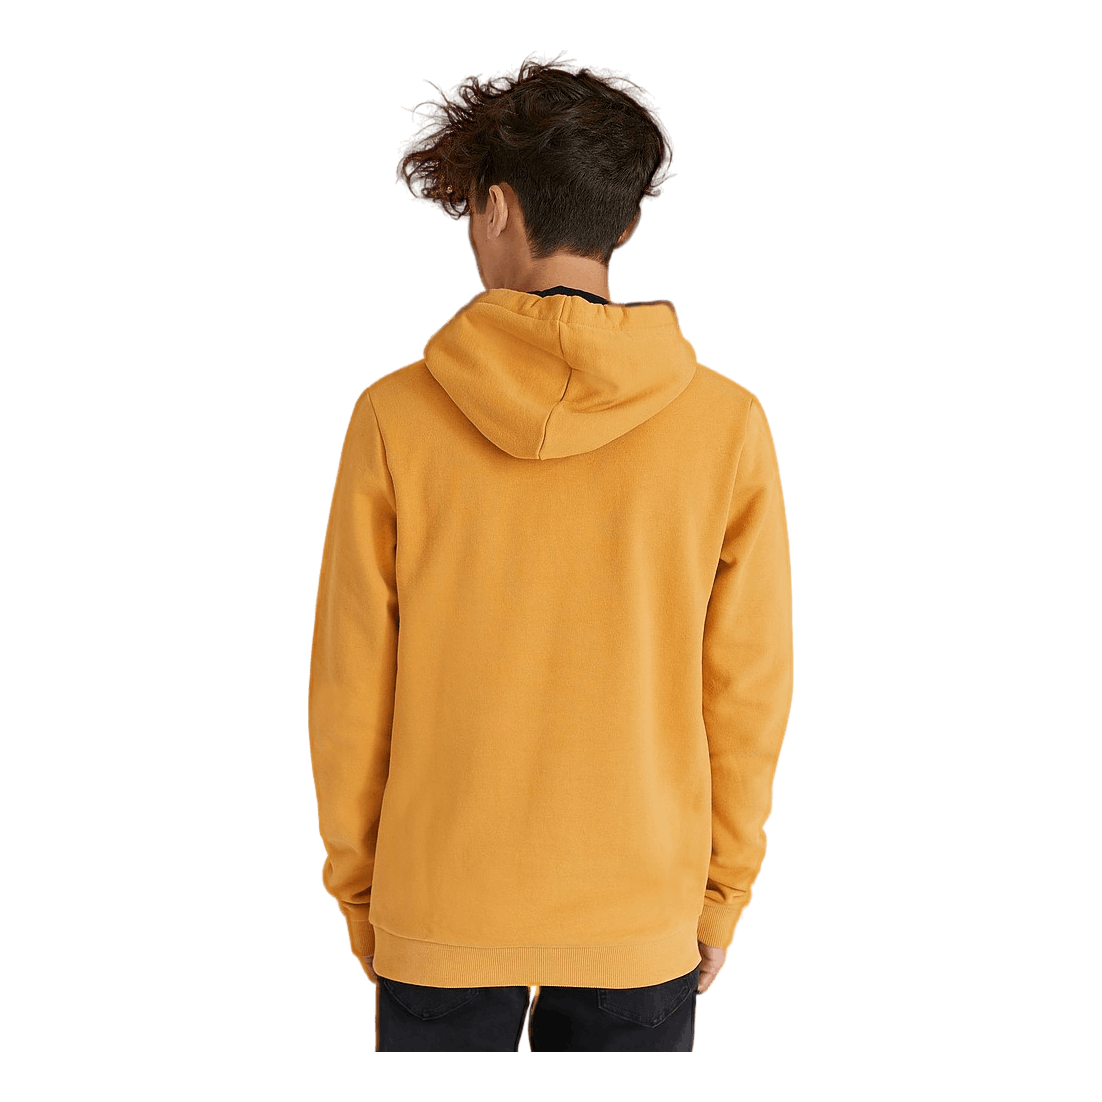 The Iconic Hooded Sweatshirt 589 Ochre